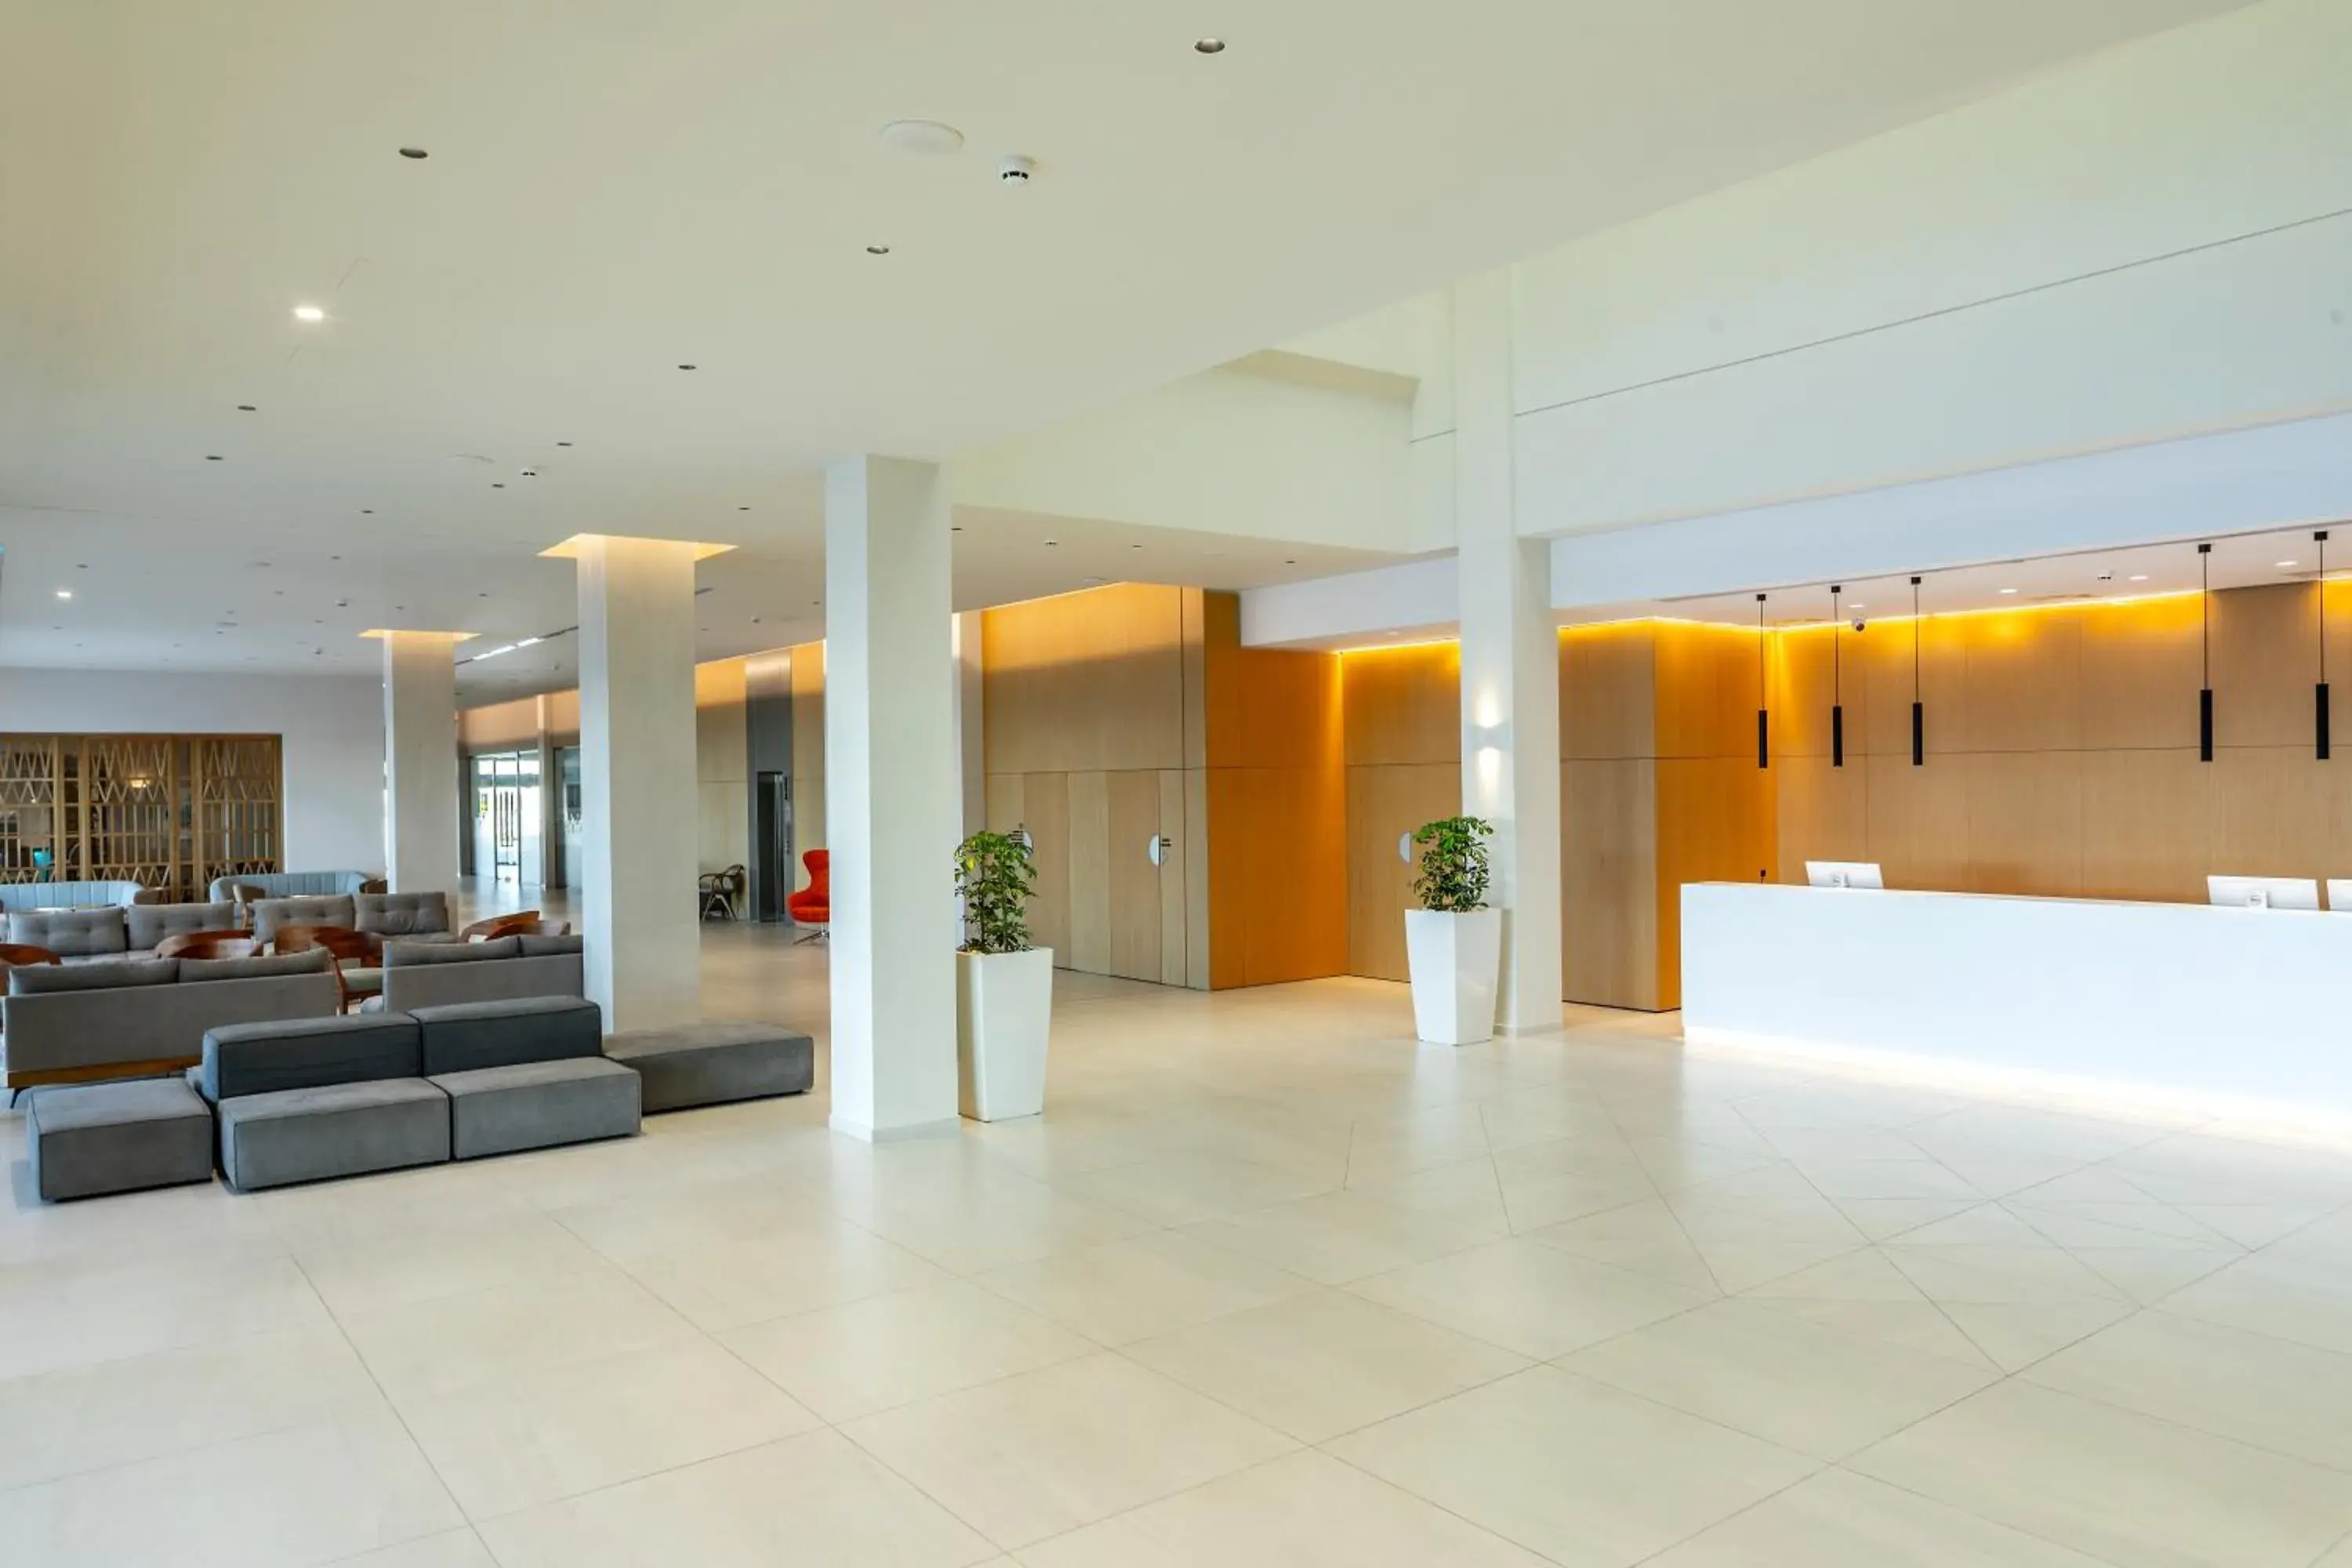 Lobby or reception, Lobby/Reception in Faros Hotel